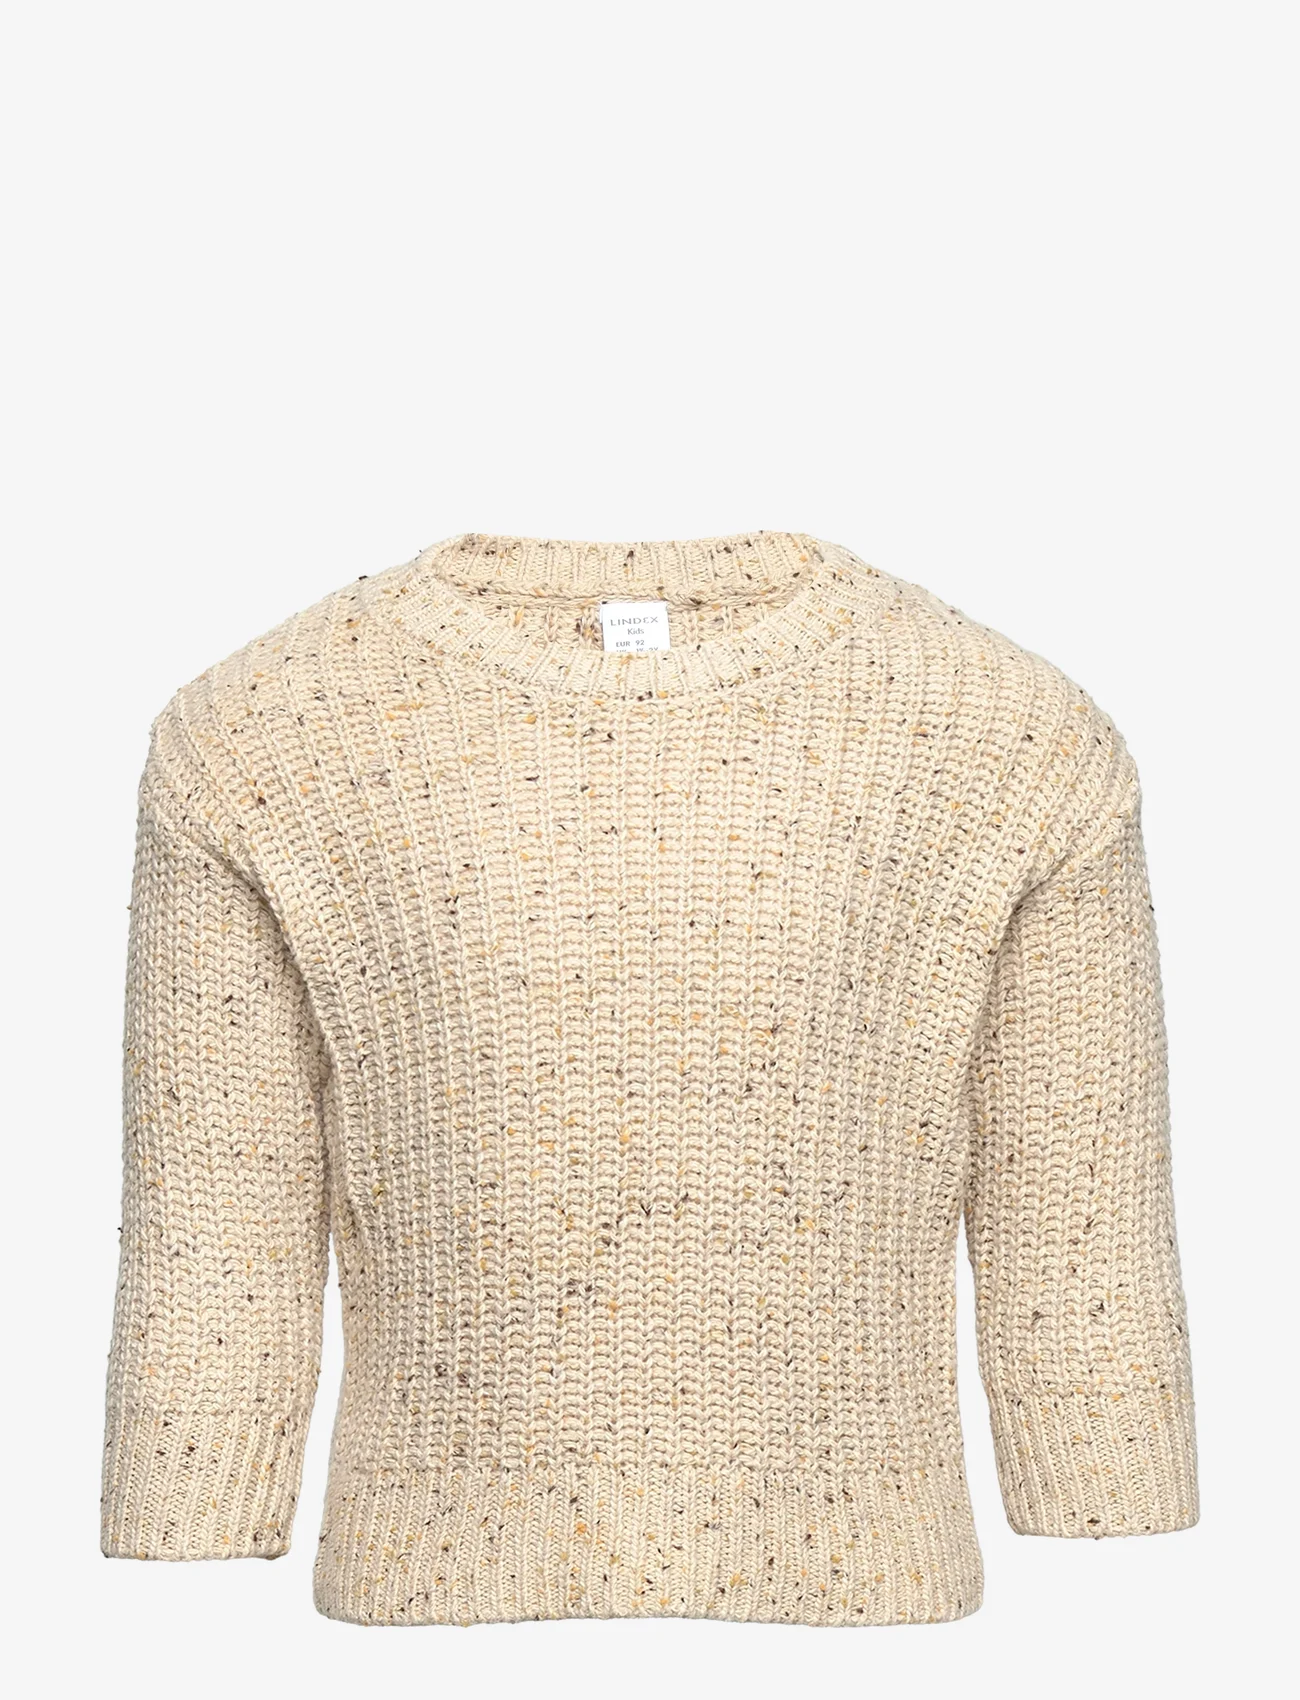 Lindex - Sweater knitted melange - pullover - light beige - 0